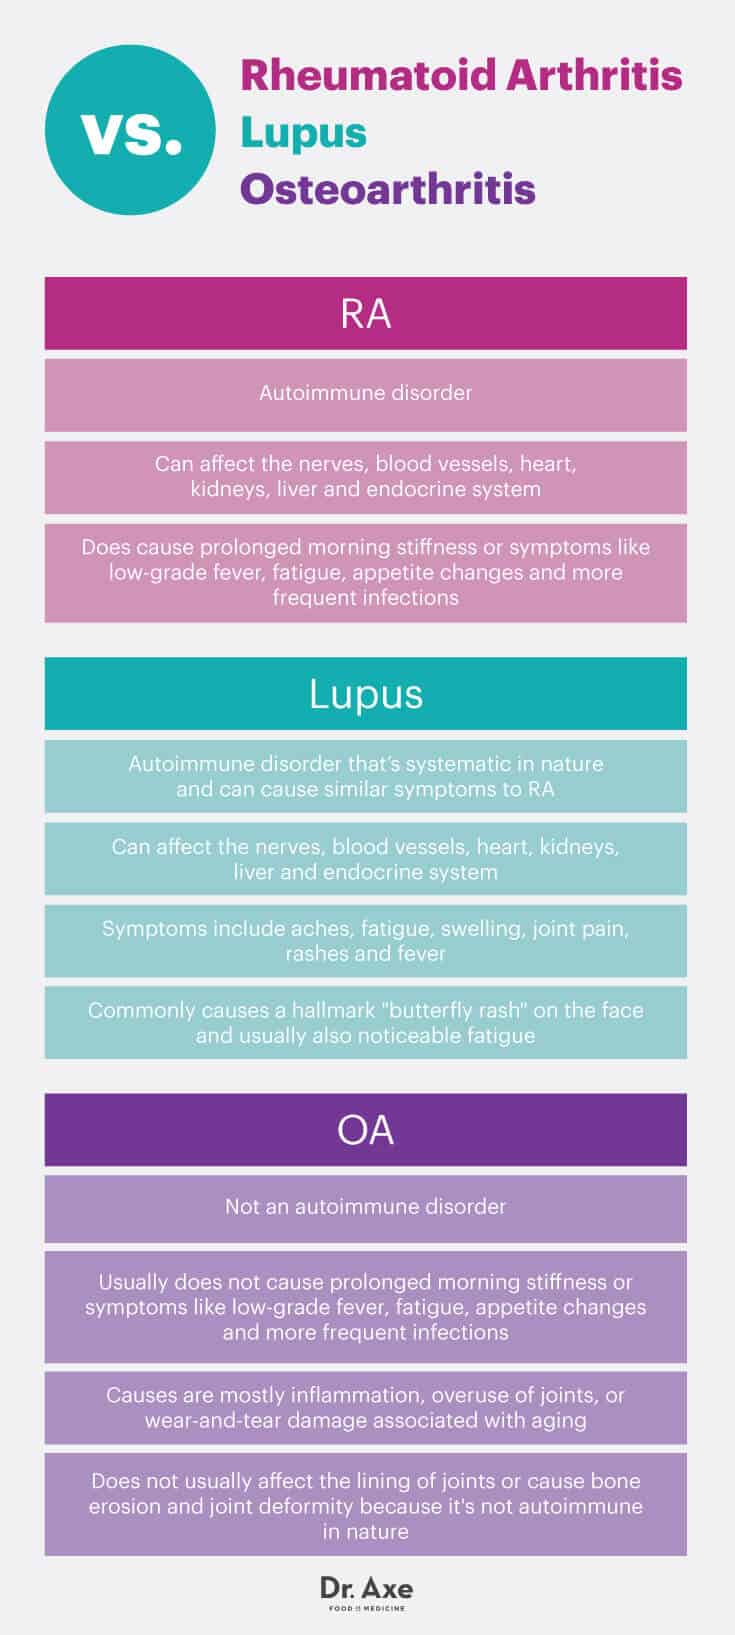 Rheumatoid arthritis vs. lupus vs. osteoarthritis - Dr. Axe